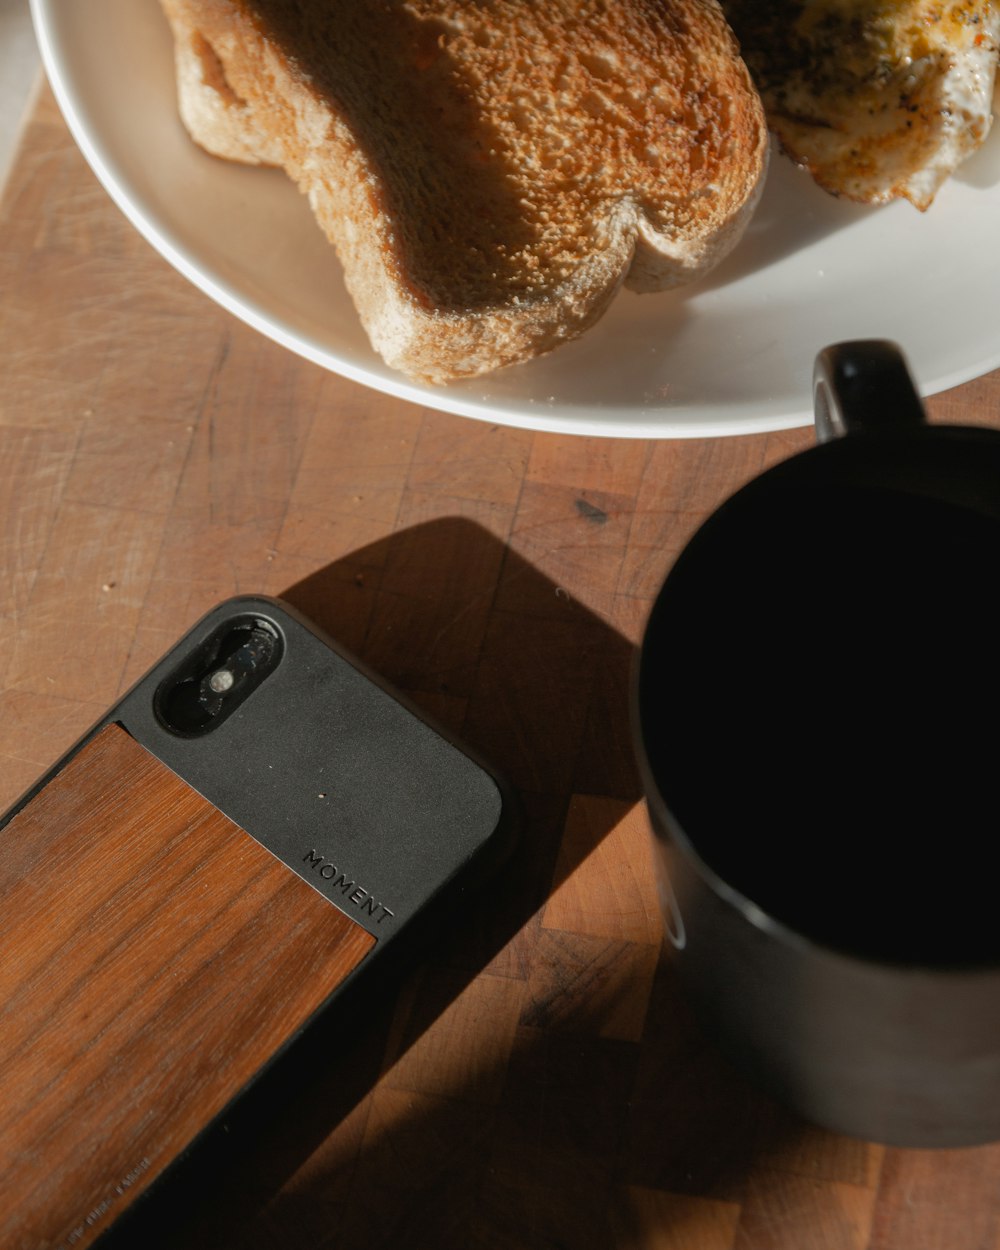 茶色の木製テーブルに黒いセラミックのマグカップ